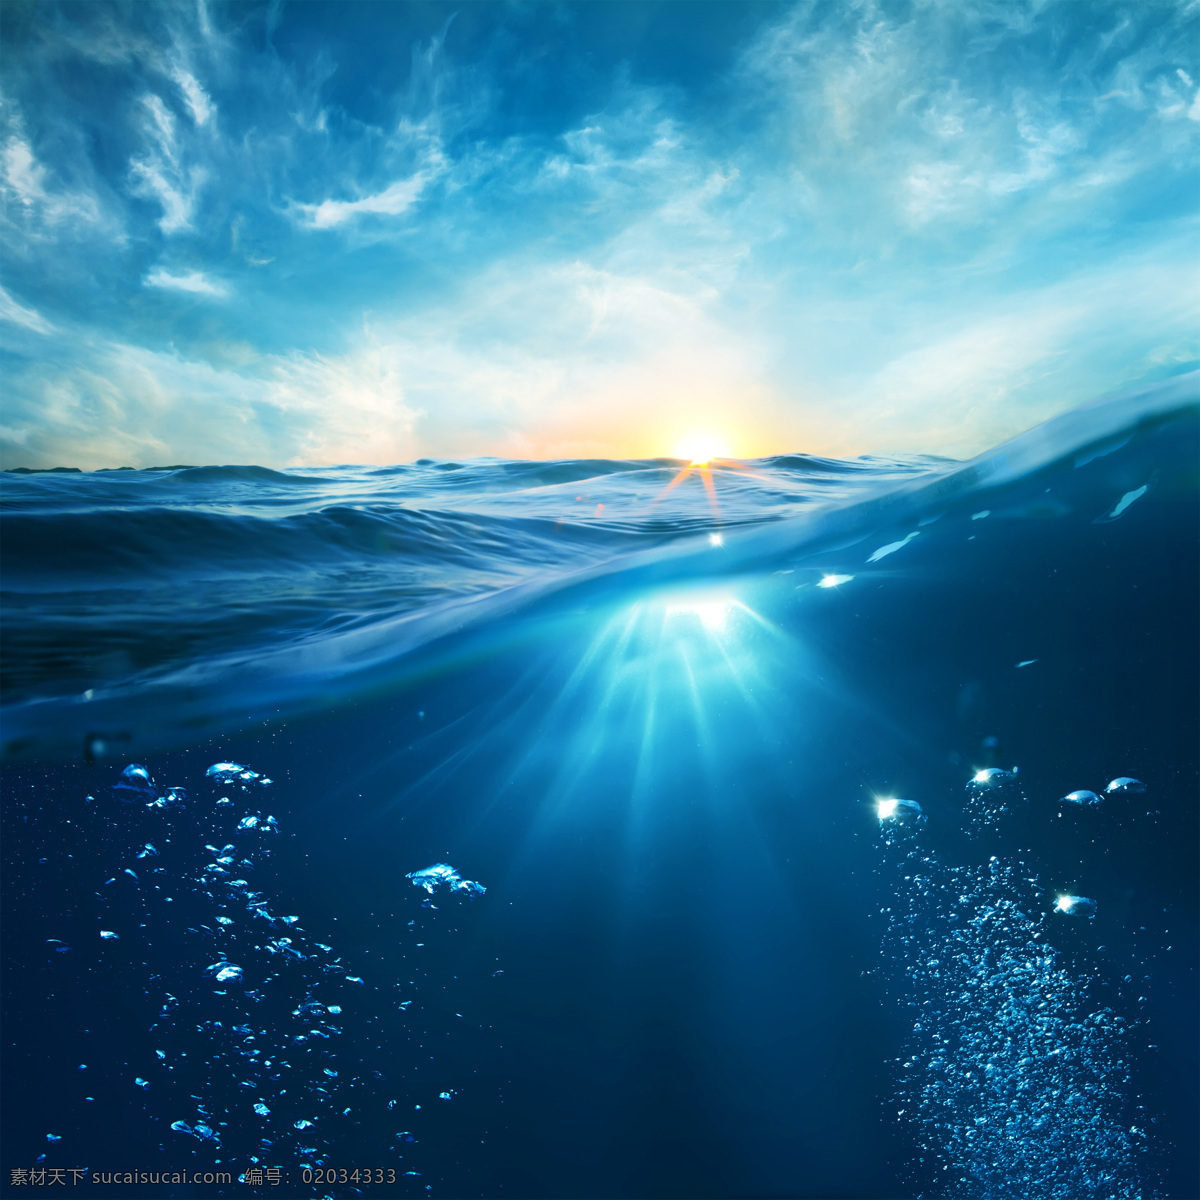 海水 大海 海洋 气泡 蓝天 白云 蓝色 阳光 光线 自然风光 自然景观 自然风景